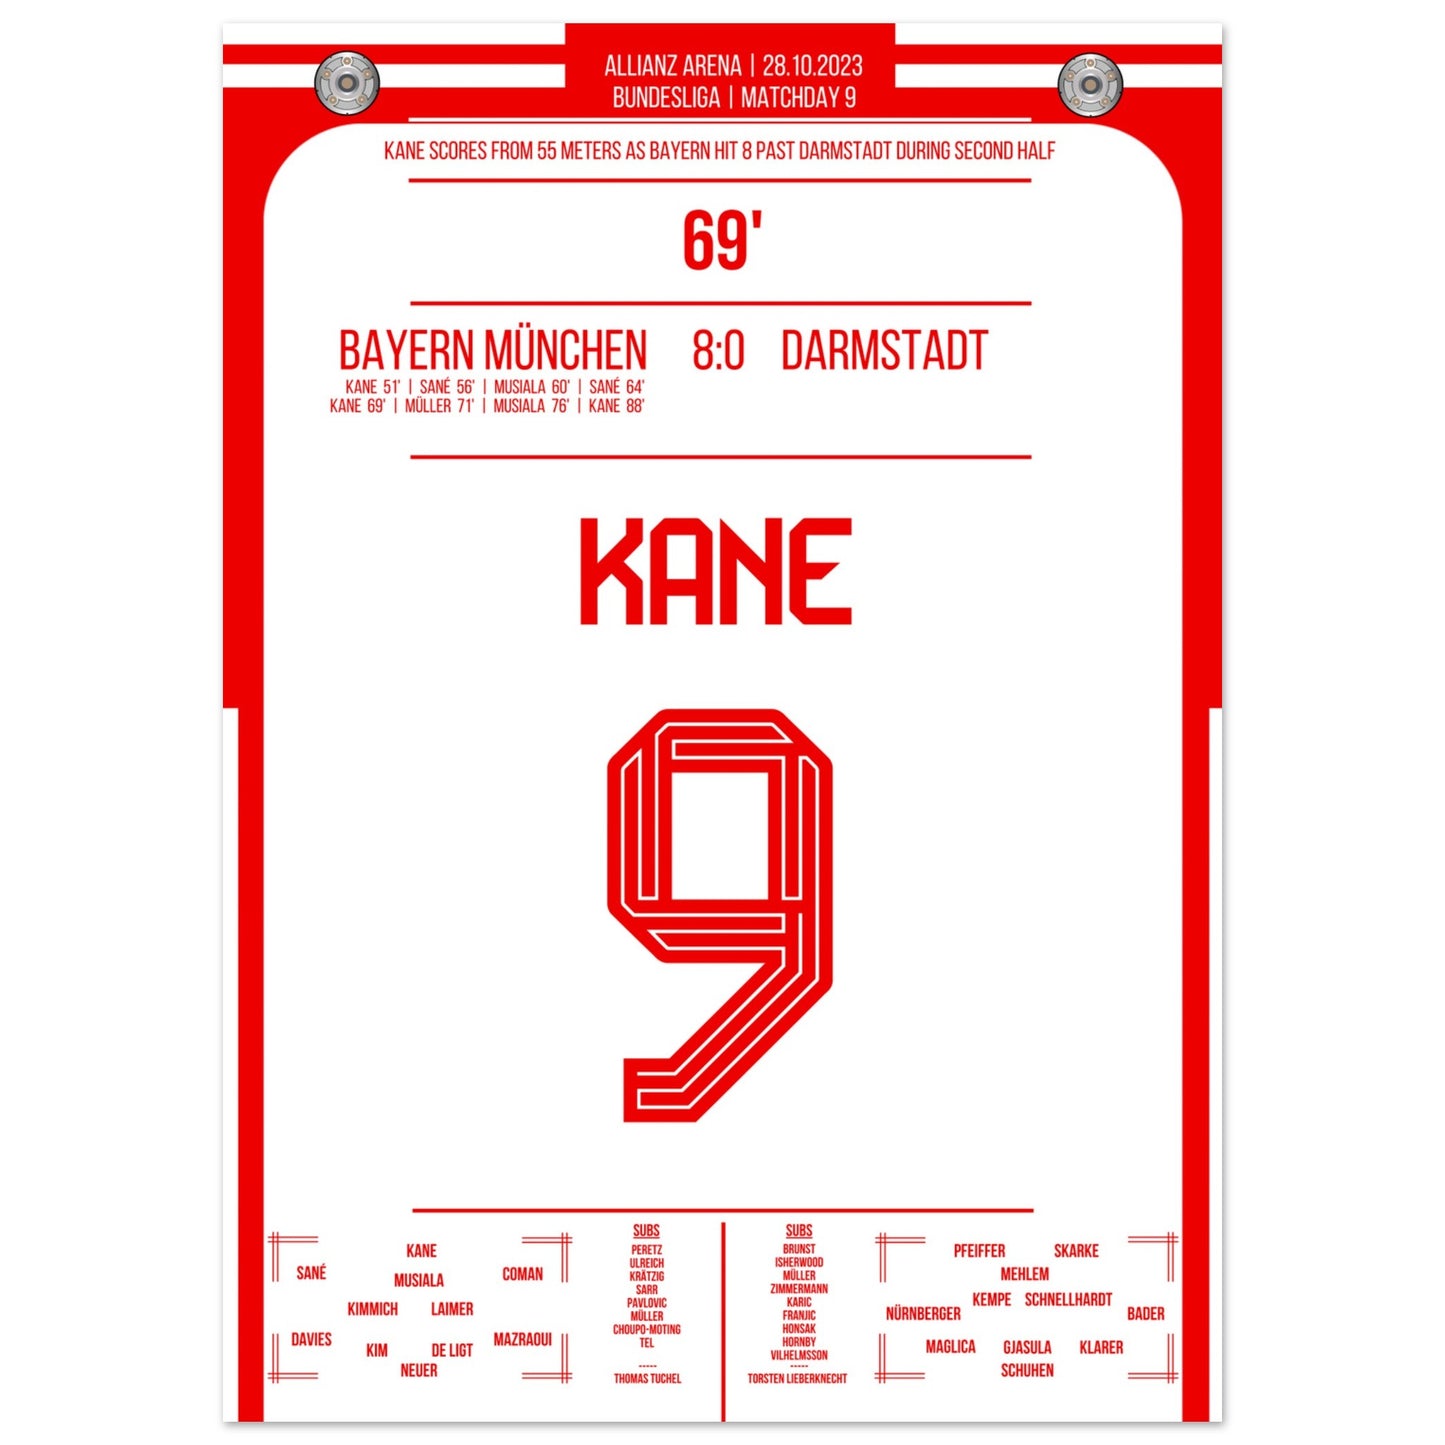 Kane's Traumtor aus 55 Metern bei 8-0 Sieg gegen Darmstadt 50x70-cm-20x28-Ohne-Rahmen